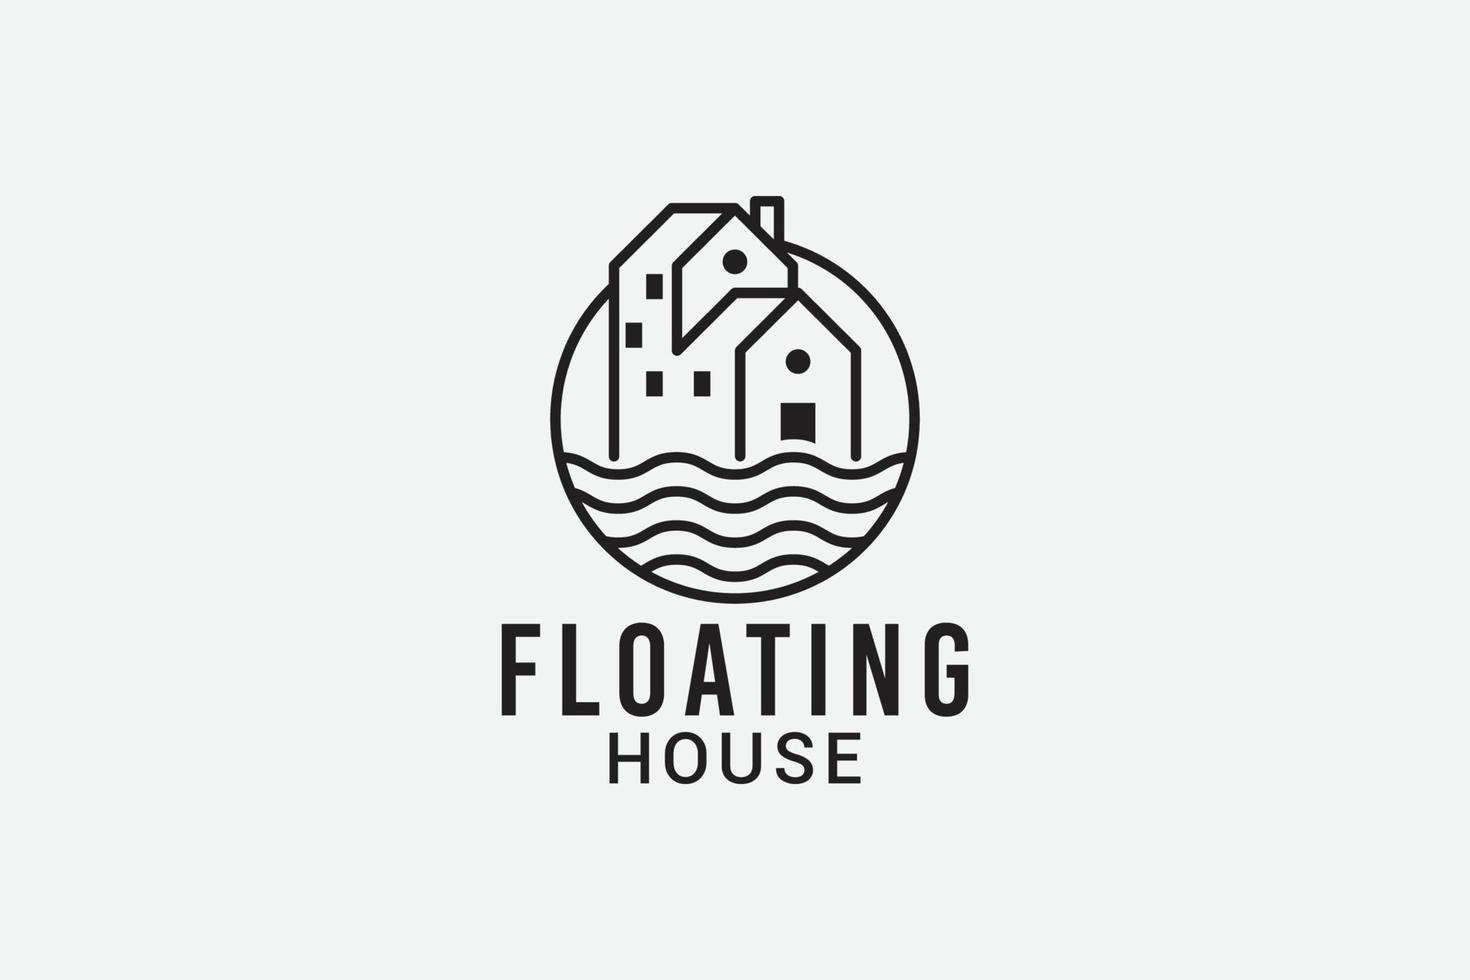 flotante casa logo con sencillo casa en línea estilo para ninguna negocio especialmente para alojamiento, real bienes, departamento, etc. vector